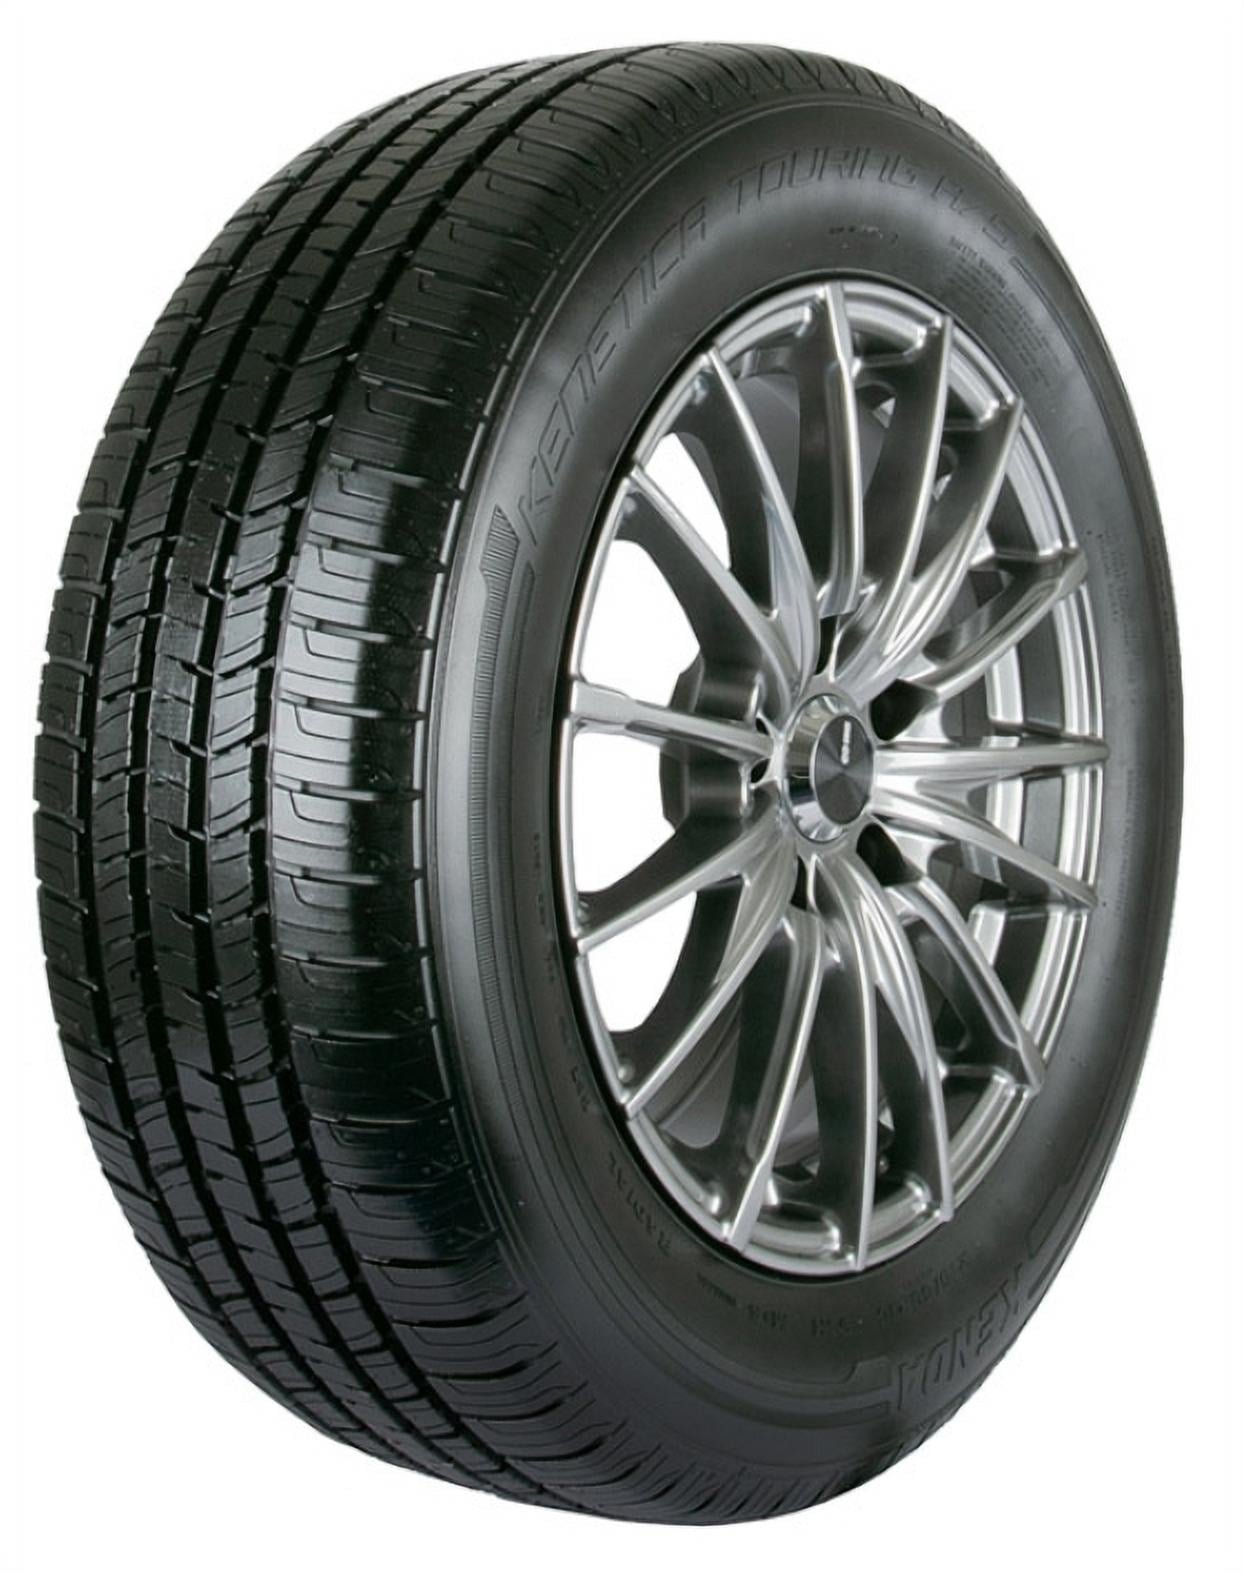 Michelin Premier A/S 195/65R15 91 H Tire.